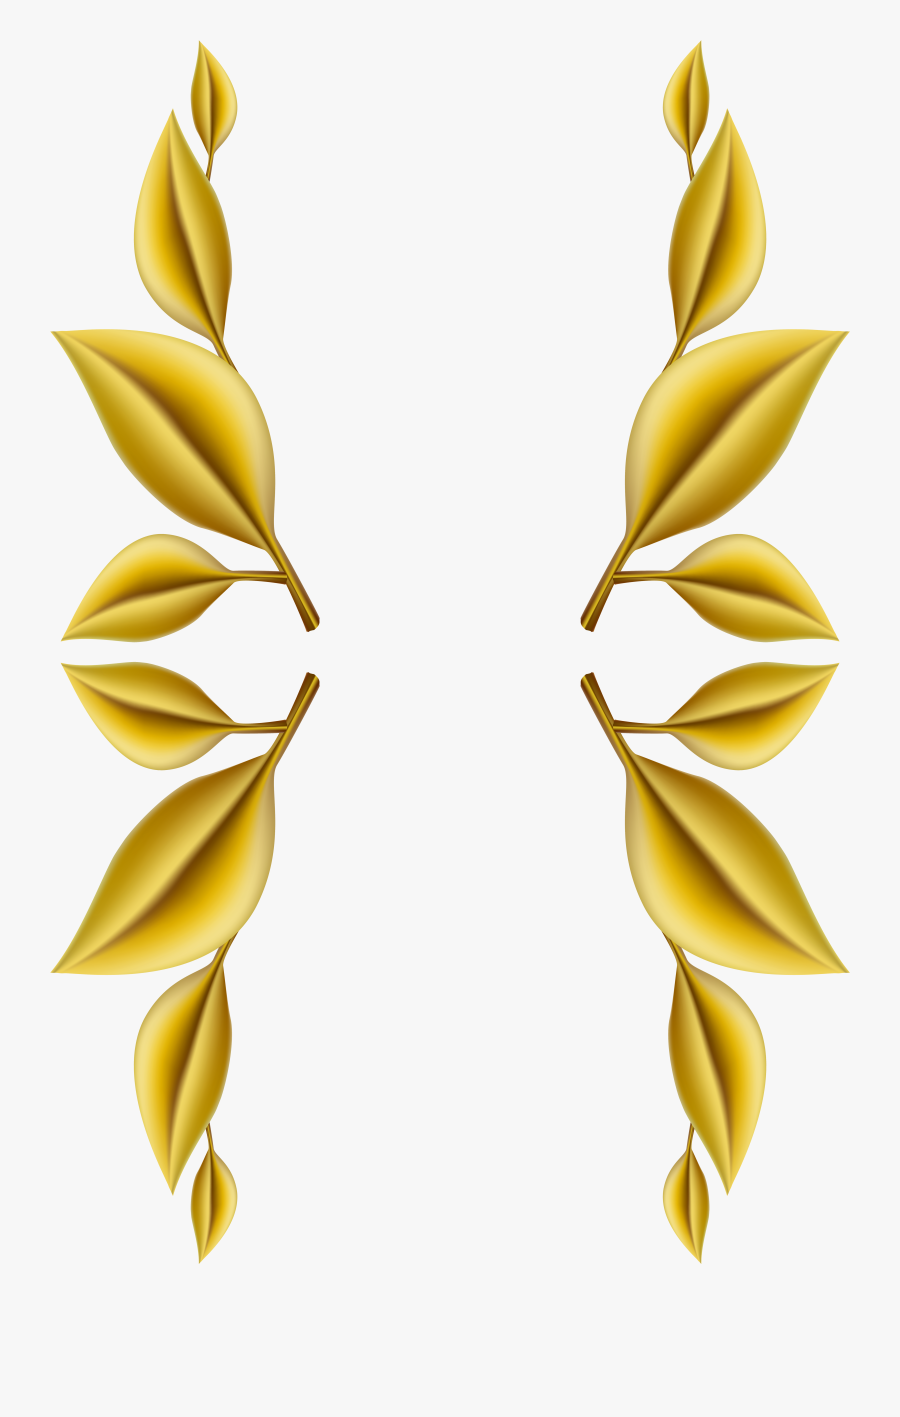 Clip Art Gold Leaf Border - Golden Leaf Border Png, Transparent Clipart